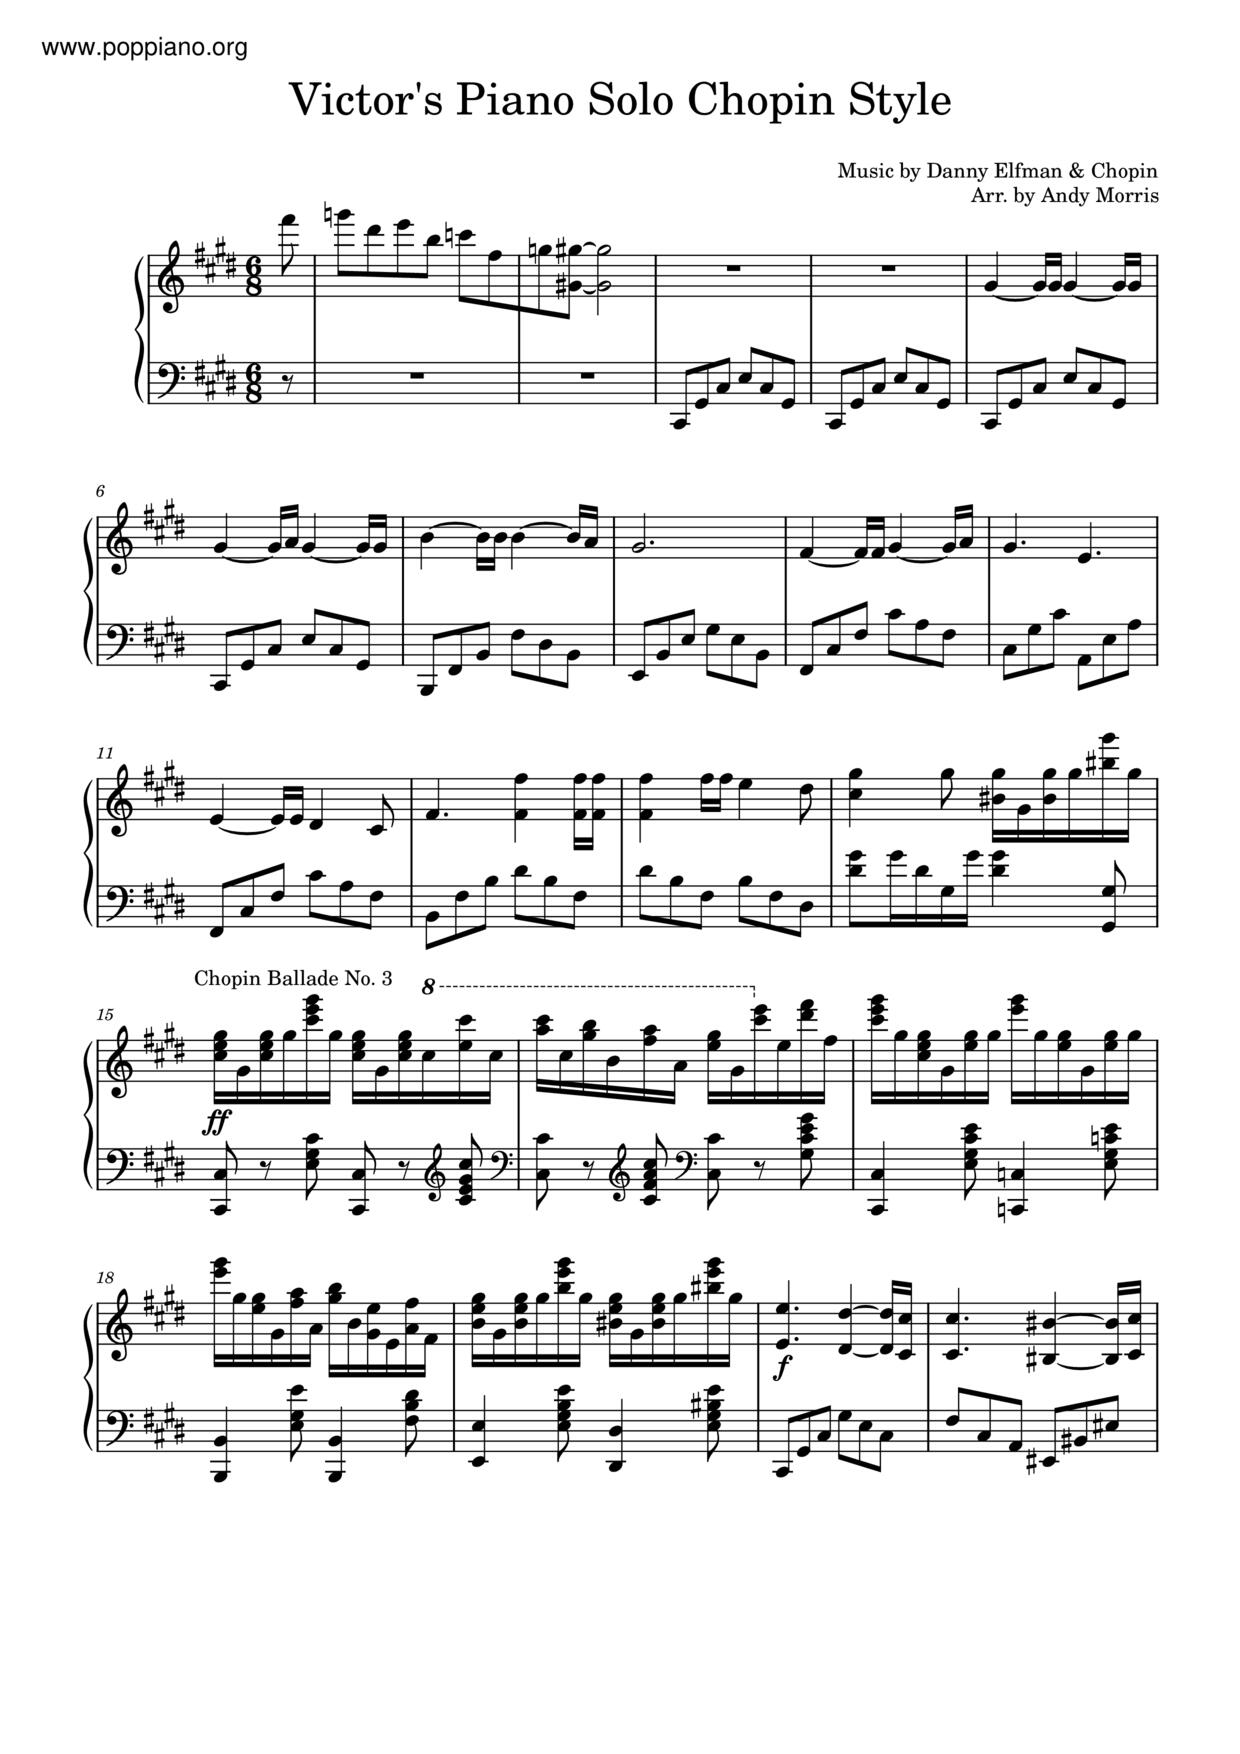 Tim Burton's Corpse Bride - Victor's Piano Solo Score